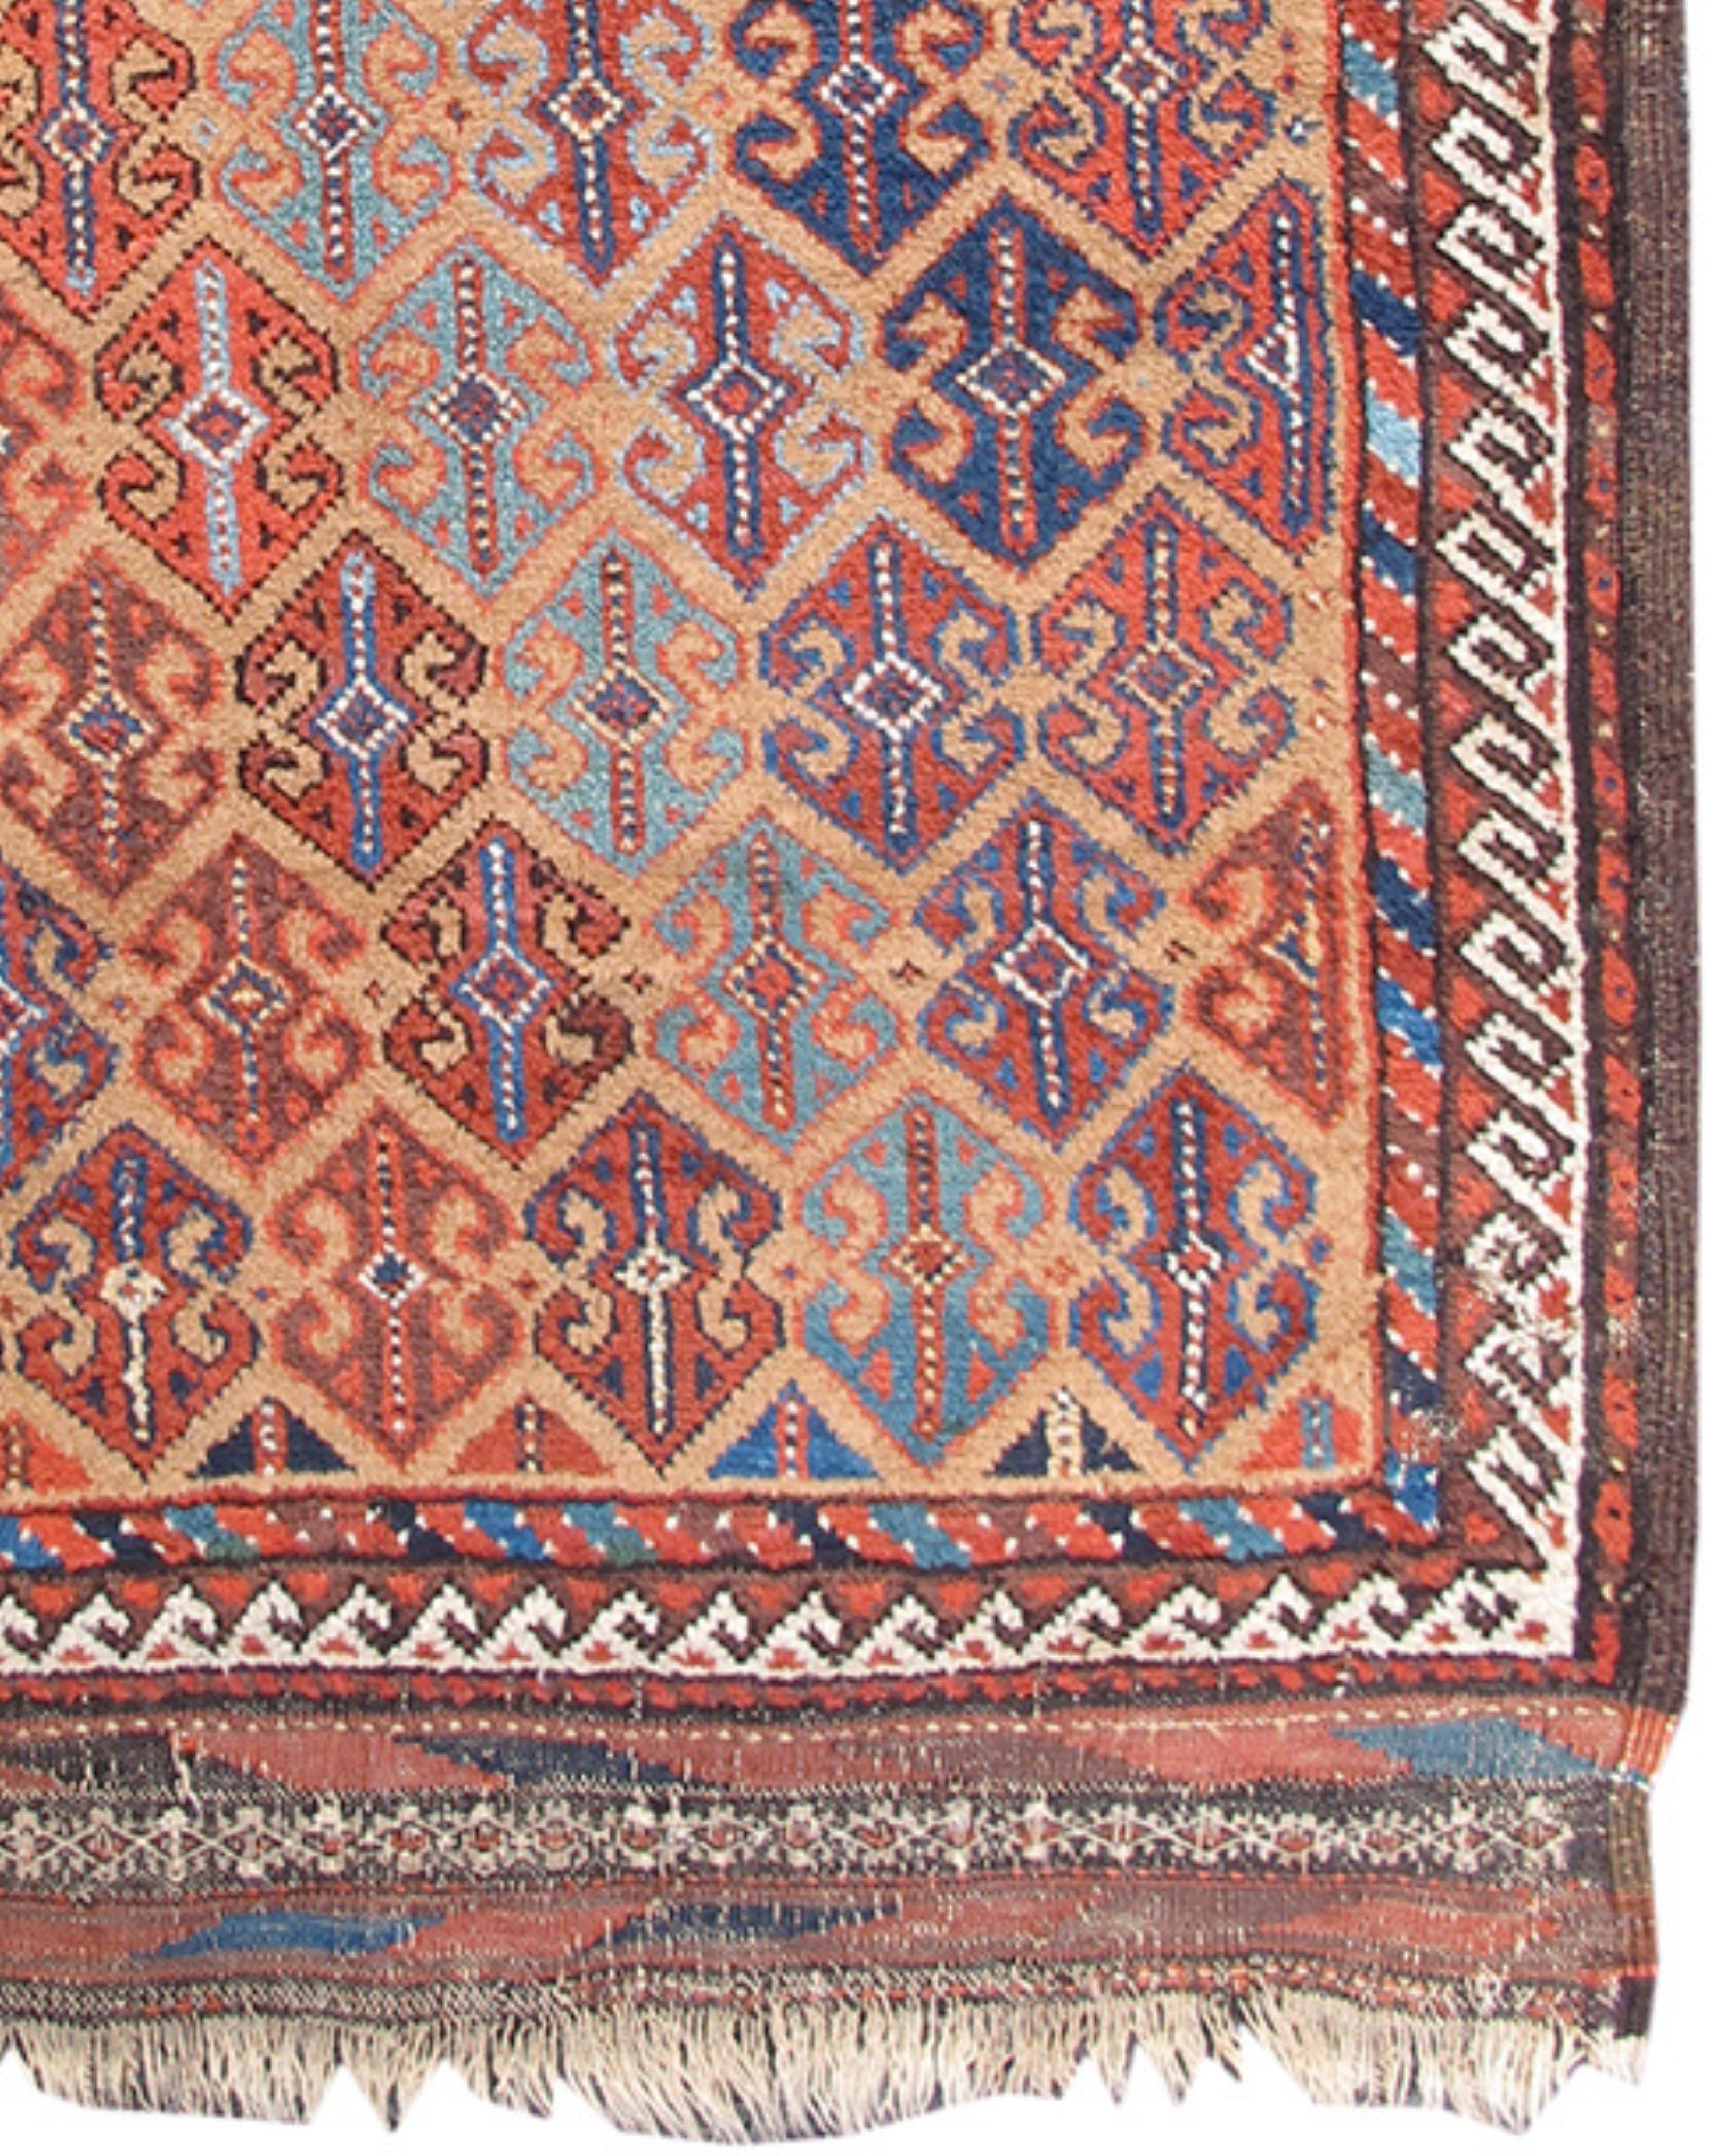 19th Century Antique Persian Baluch Rug, c. 1900